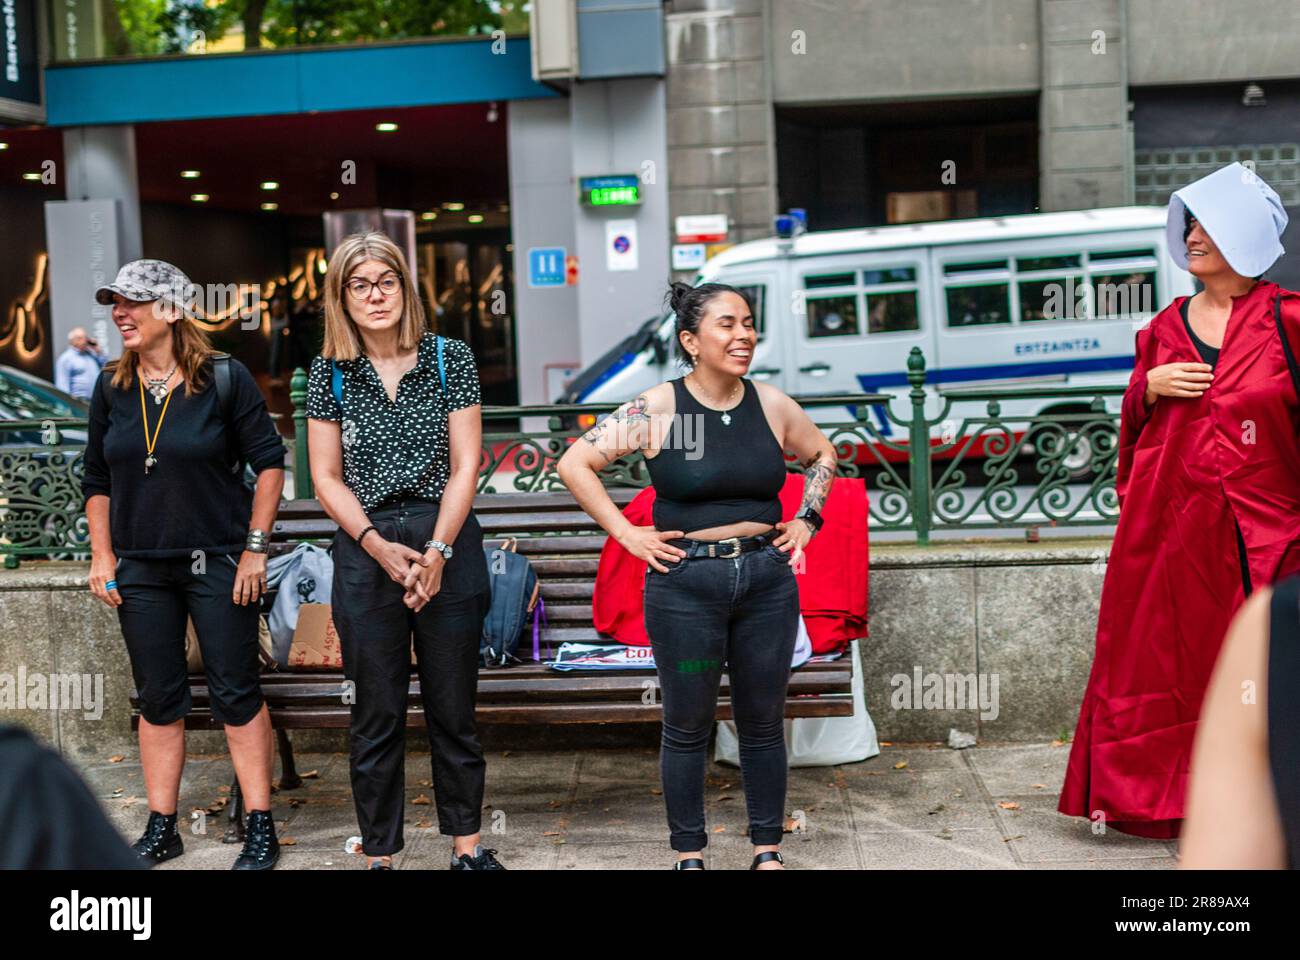 Des activistes féministes radicaux vêtus d'un costume de la série "The Handmaid's Tale" participent à une manifestation contre le recours aux mères porteuses. Banque D'Images